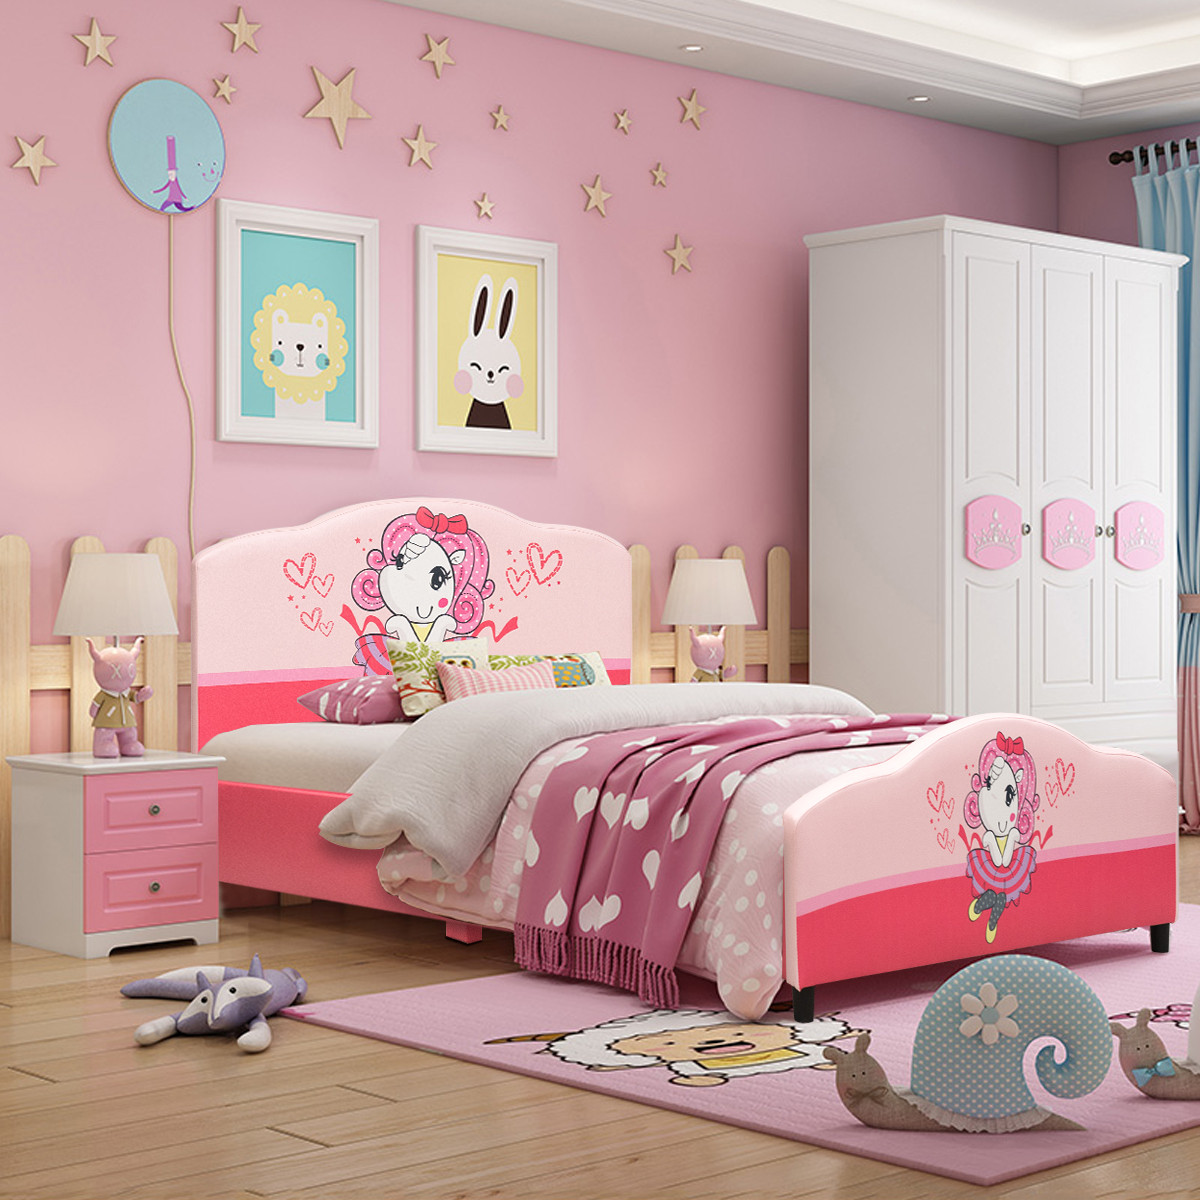 Walmart Kids Bedroom Sets
 Costway Kids Children Upholstered Platform Toddler Bed